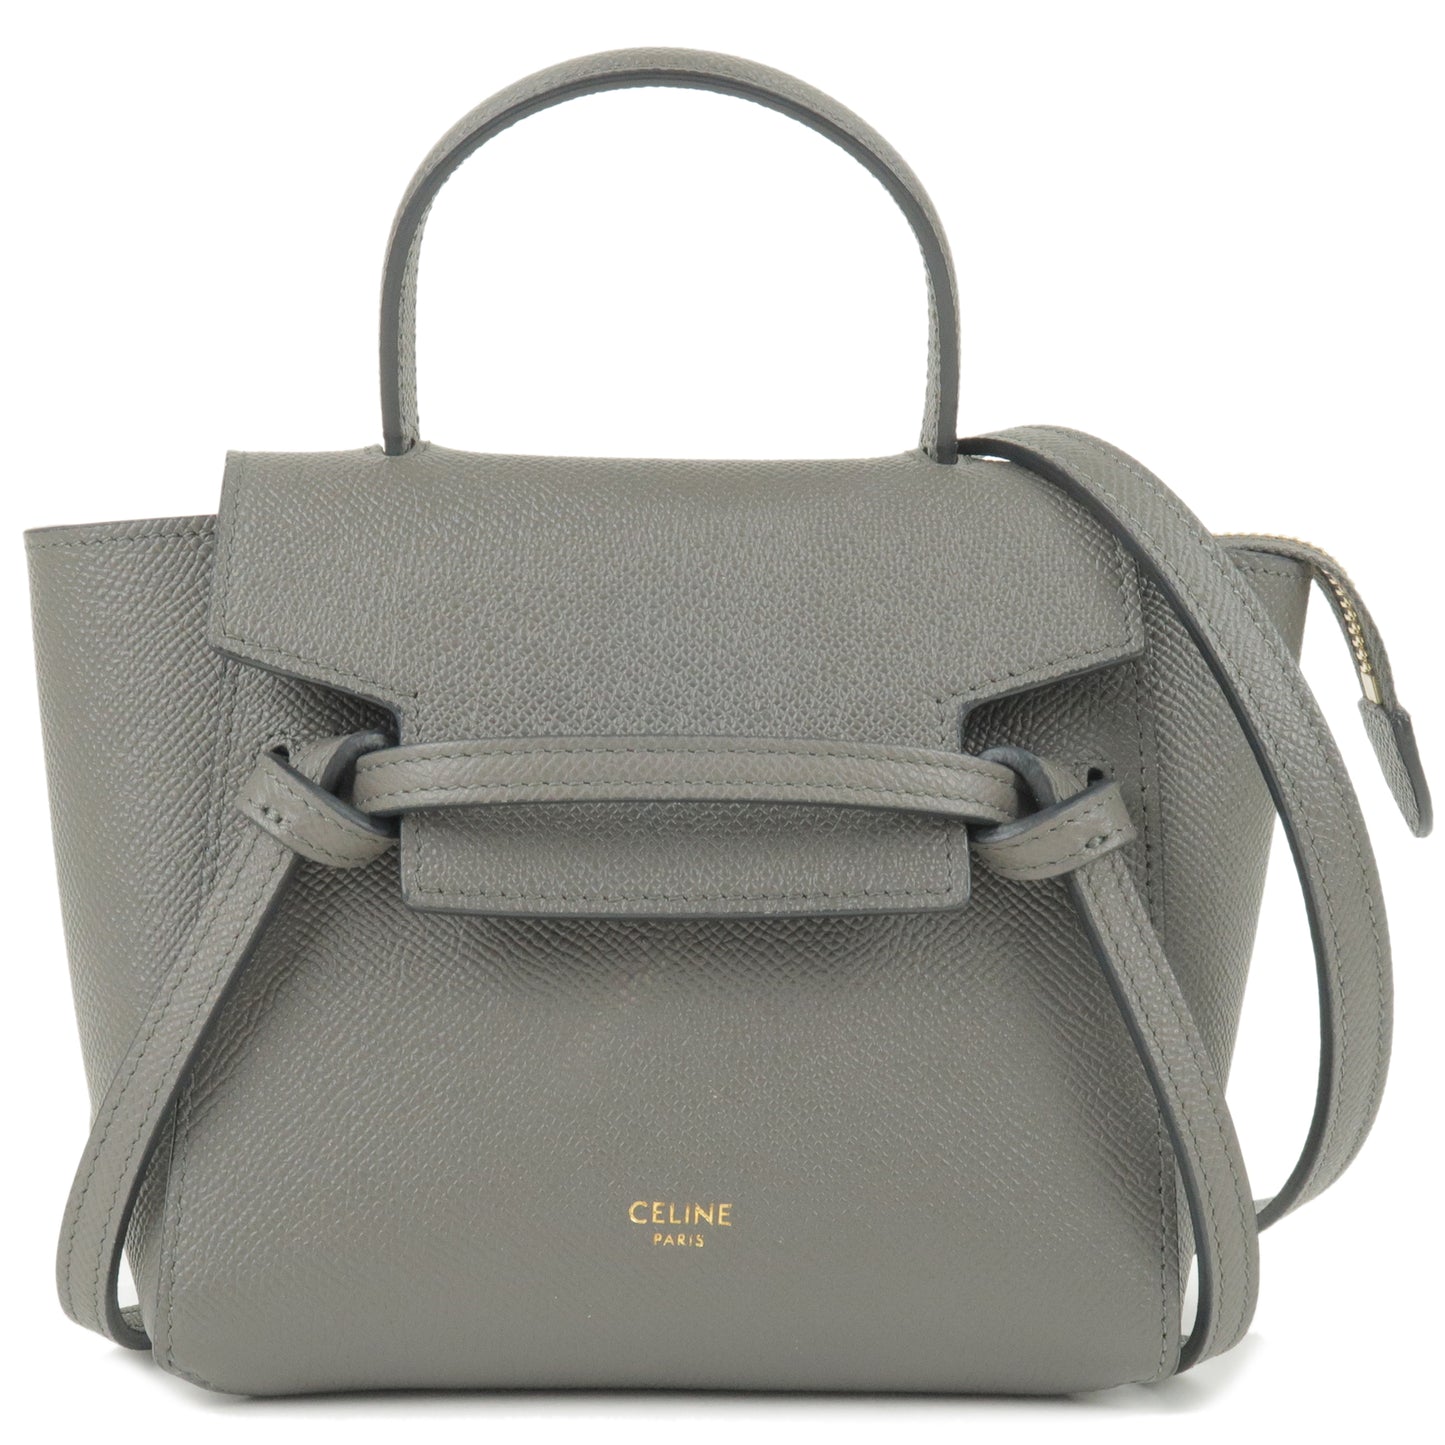 CELINE-Pico-Leather-Belt-Bag-2Way-Bag-Shoulder-Bag-Gray-194263